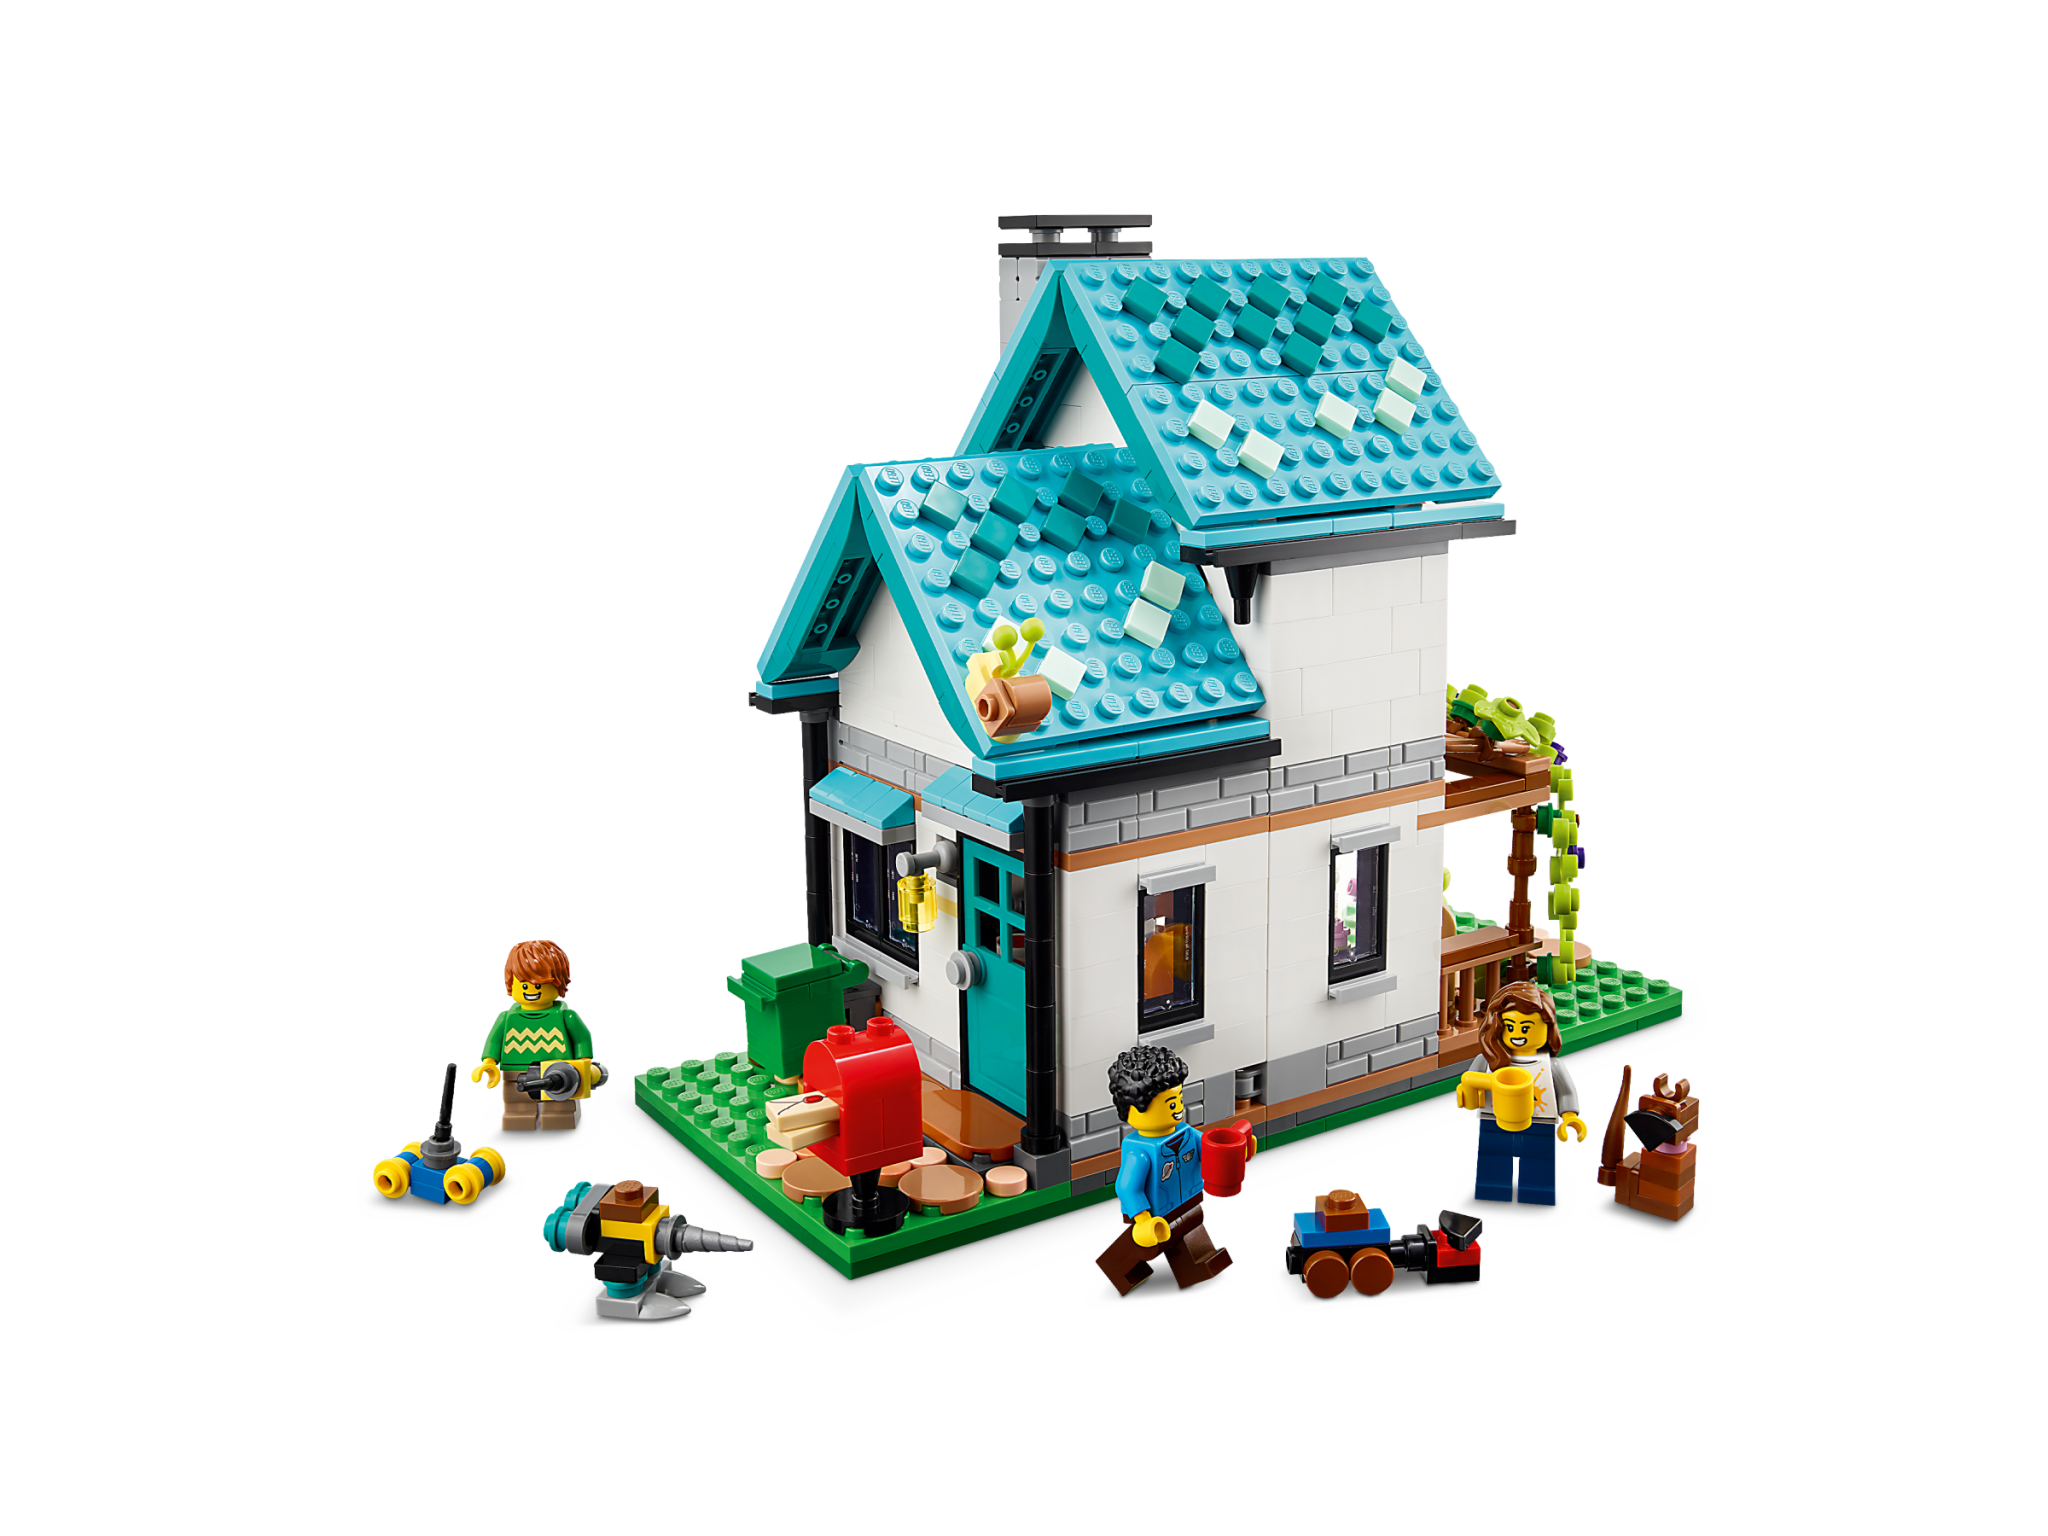 Lego, ou jouer à construire sa maison